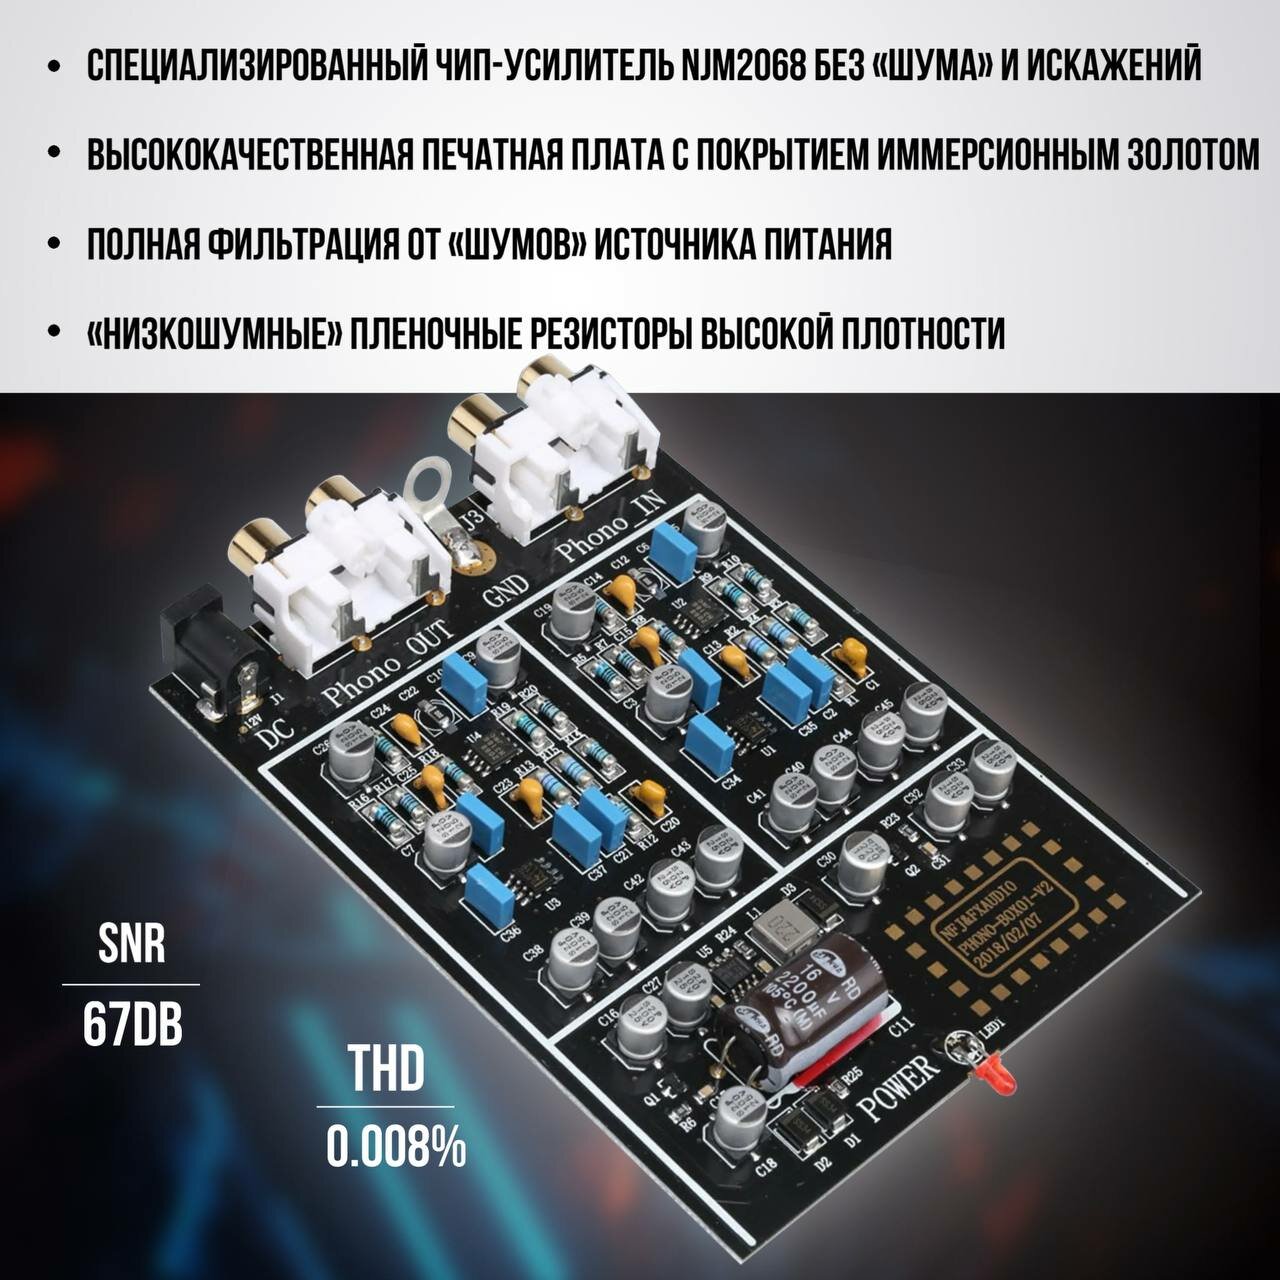 Фонокорректор (предусилитель) для винила FX-AUDIO (RUS) BOX 01 (MM)